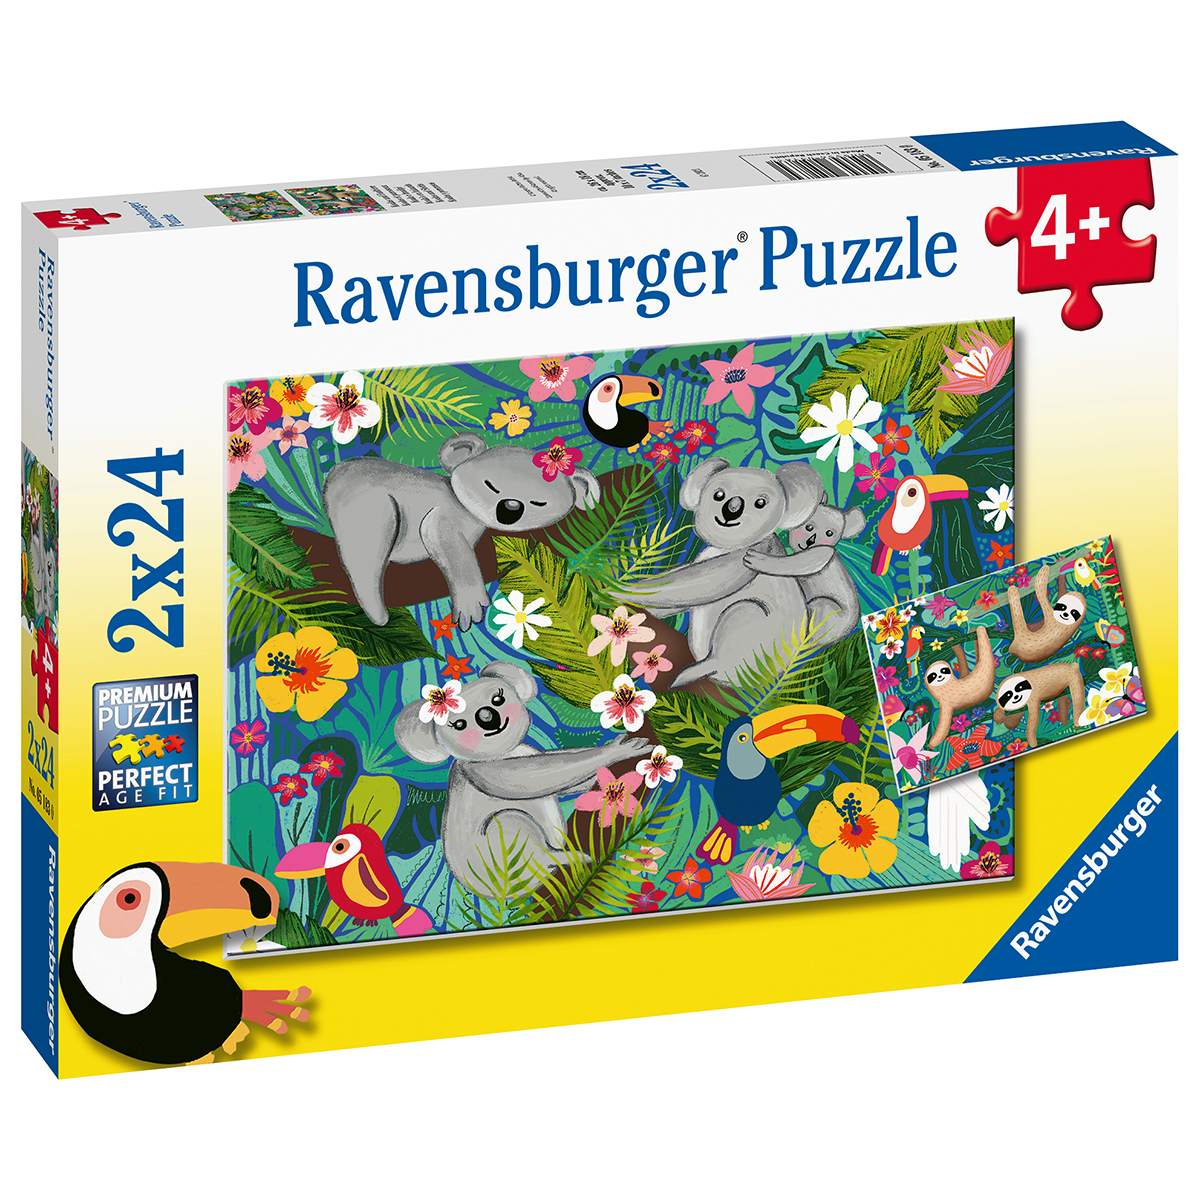 Ravensburger 2 puzzle 24 pezzi per bambini dai 4 anni - koala e bradipi - RAVENSBURGER